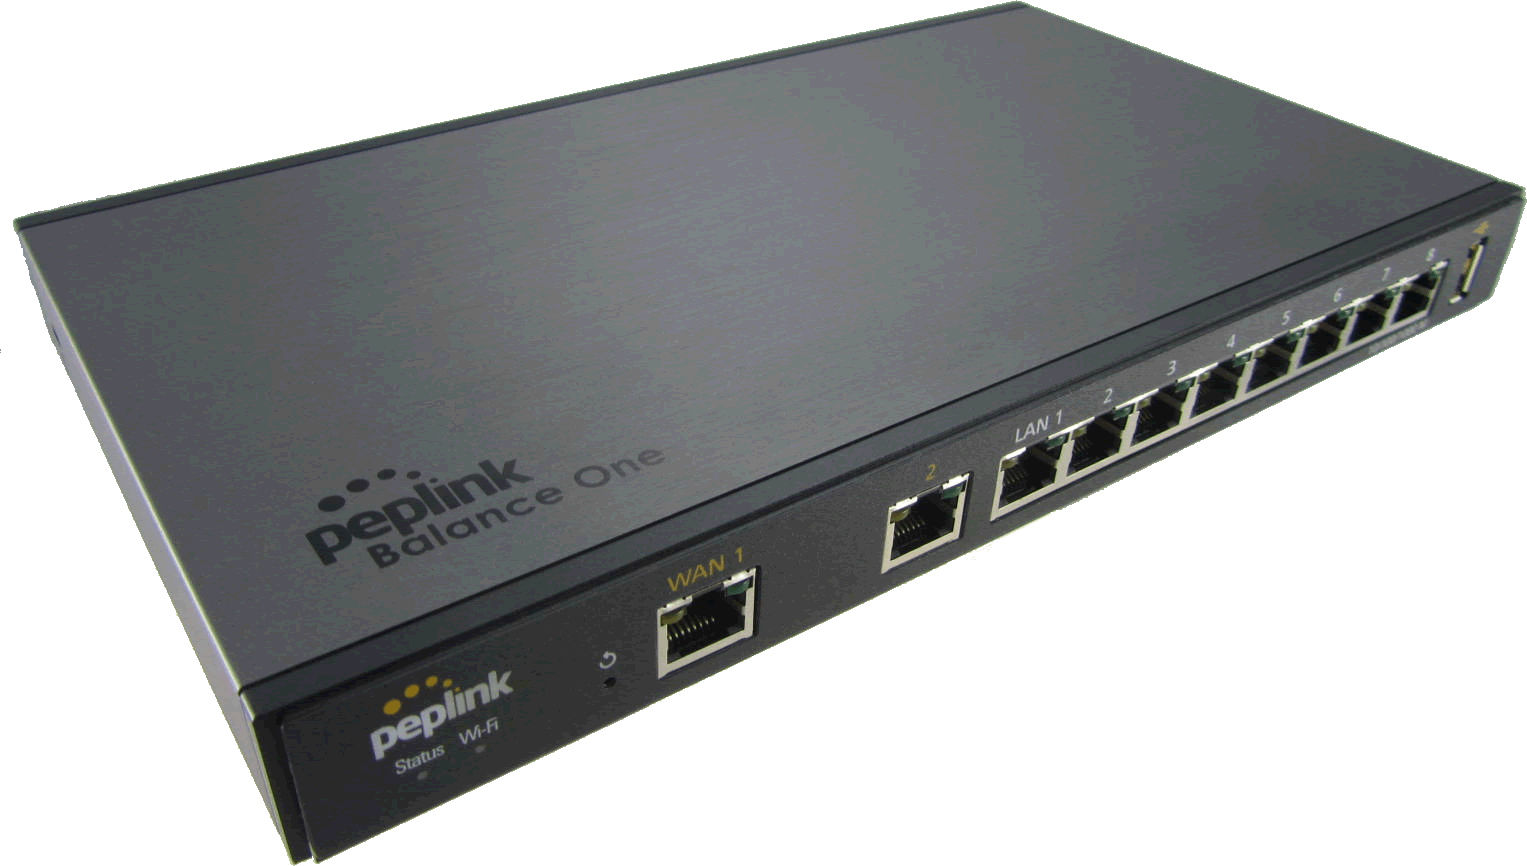   Routeurs  sdwan  service  600Mb Location Balance One Core : routeur firewall pour gérer 2 liaisons WAN 